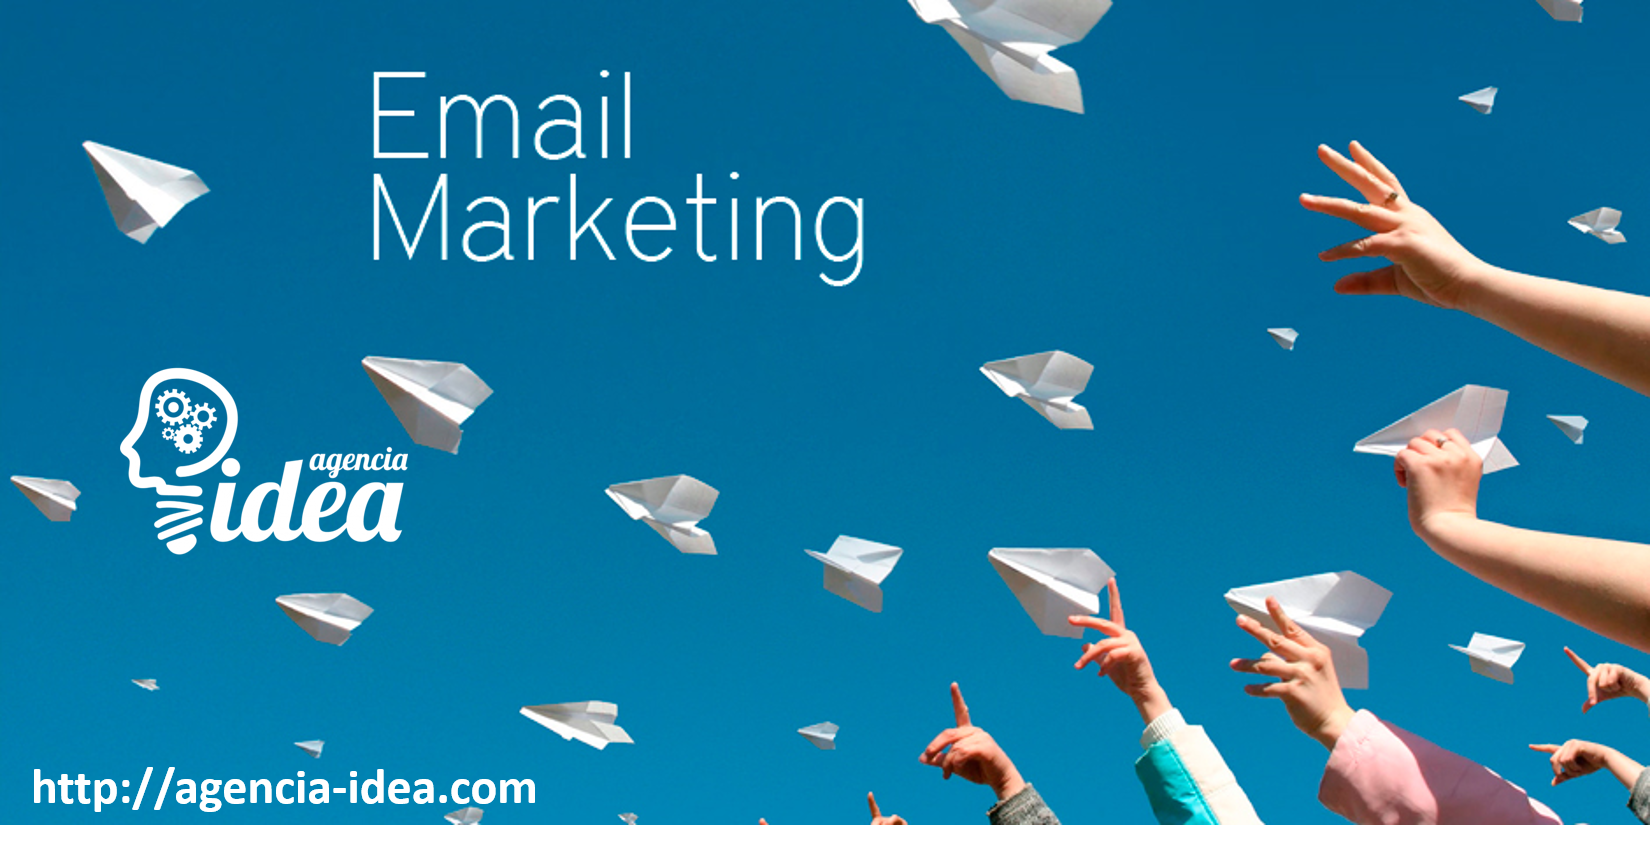 Las herramientas y funcionalidades más importantes en email marketing. | Agencia Mar